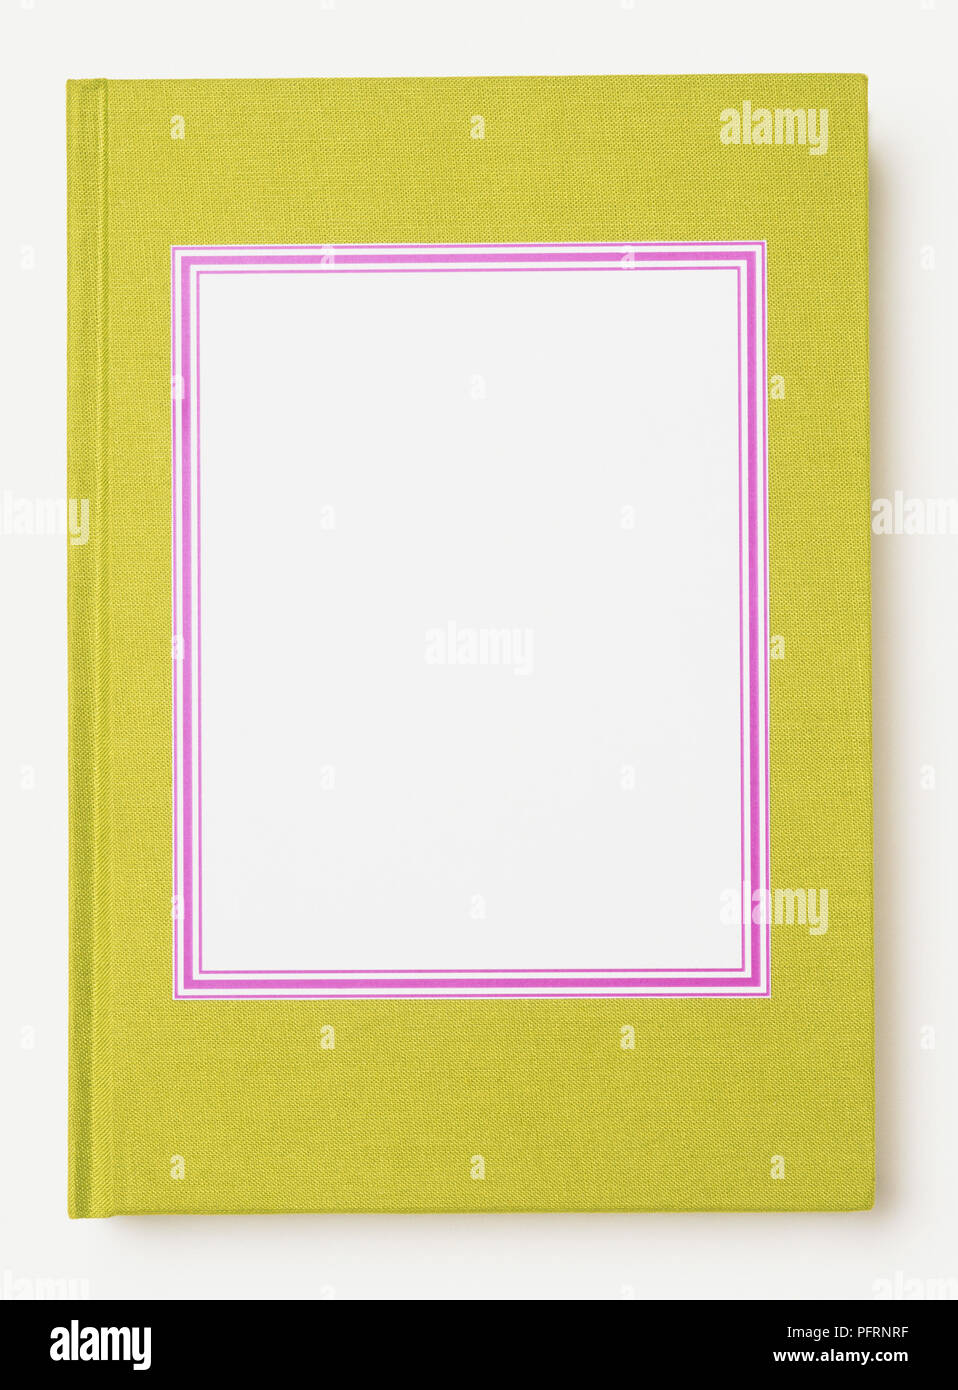 Lo spazio in bianco con bordo violaceo sul coperchio anteriore della calce libro verde Foto Stock